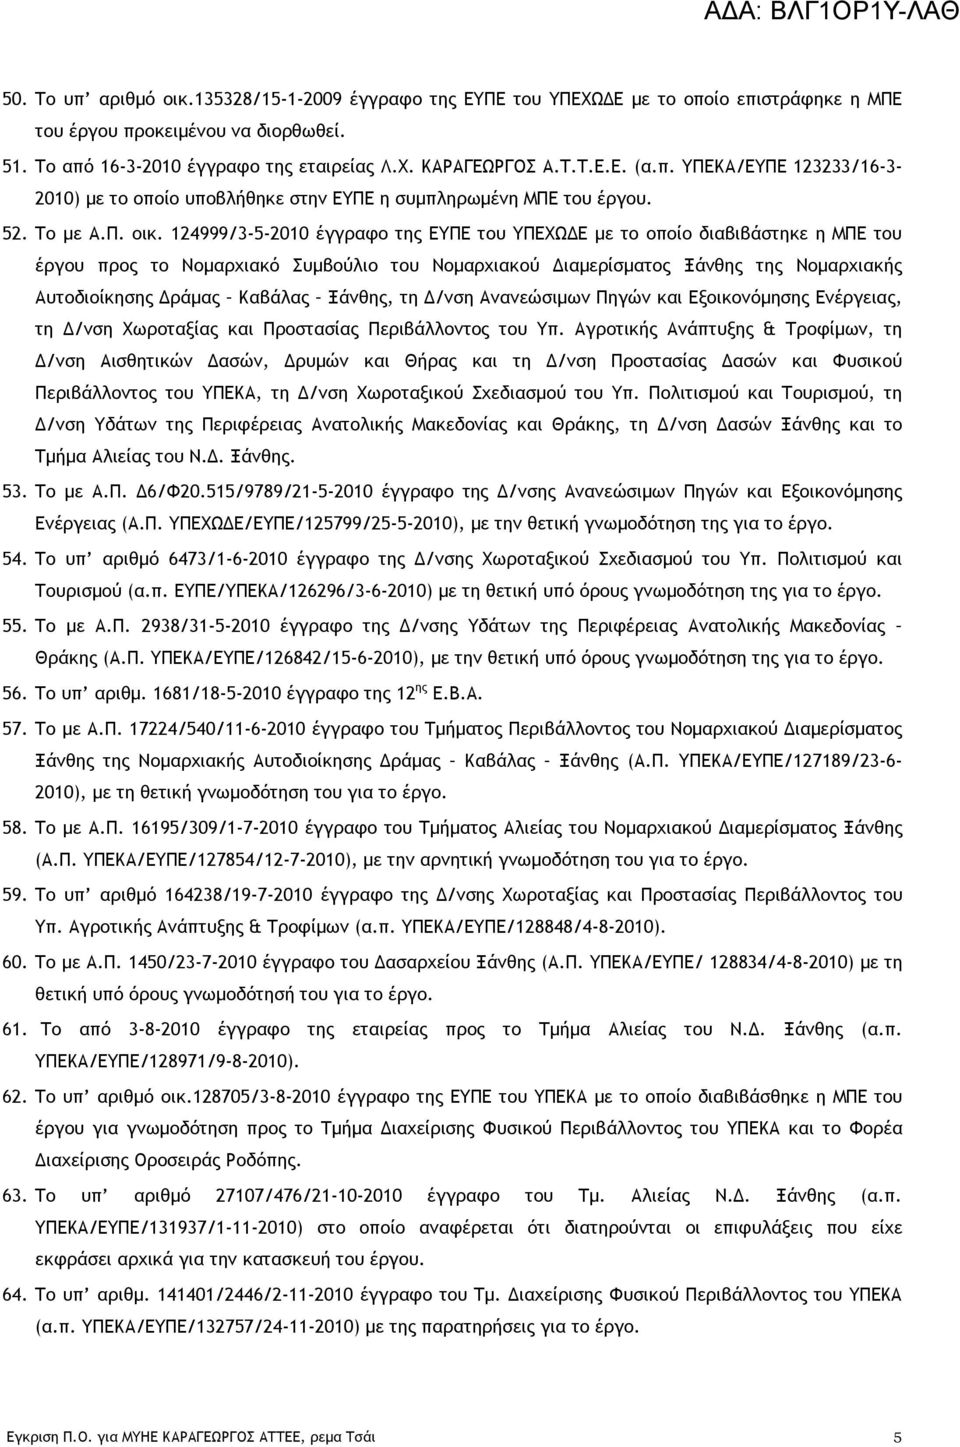 124999/3-5-2010 έγγραφο της ΕΥΠΕ του ΥΠΕΧΩΔΕ με το οποίο διαβιβάστηκε η ΜΠΕ του έργου προς το Νομαρχιακό Συμβούλιο του Νομαρχιακού Διαμερίσματος Ξάνθης της Νομαρχιακής Αυτοδιοίκησης Δράμας Καβάλας